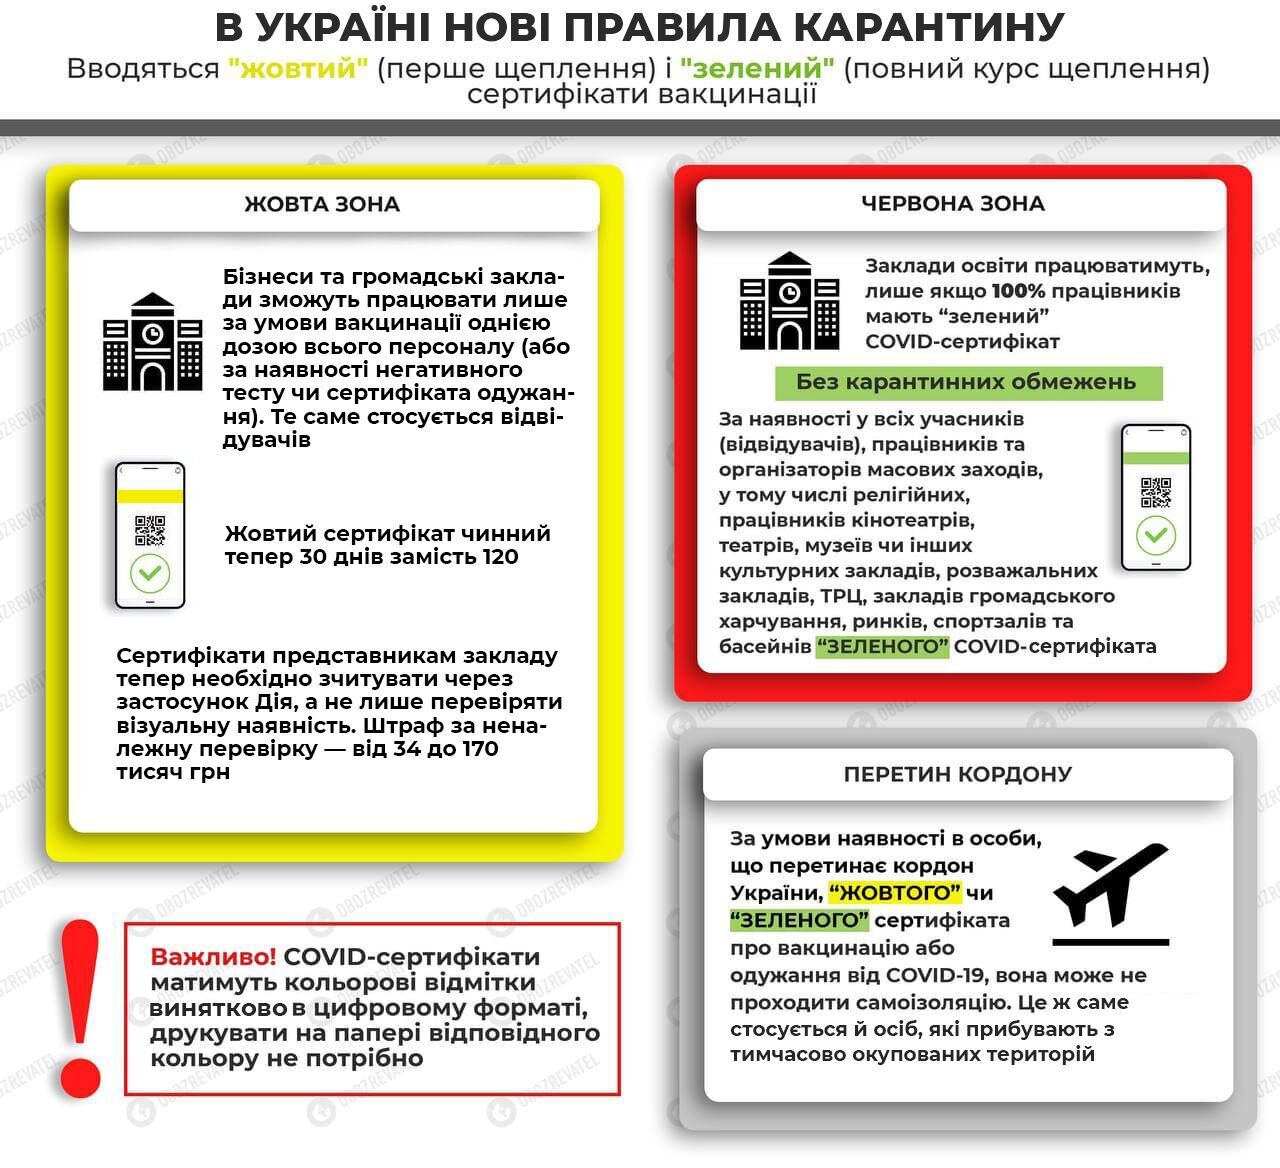 С 6 декабря в Украине начали действовать обновленные карантинные правила